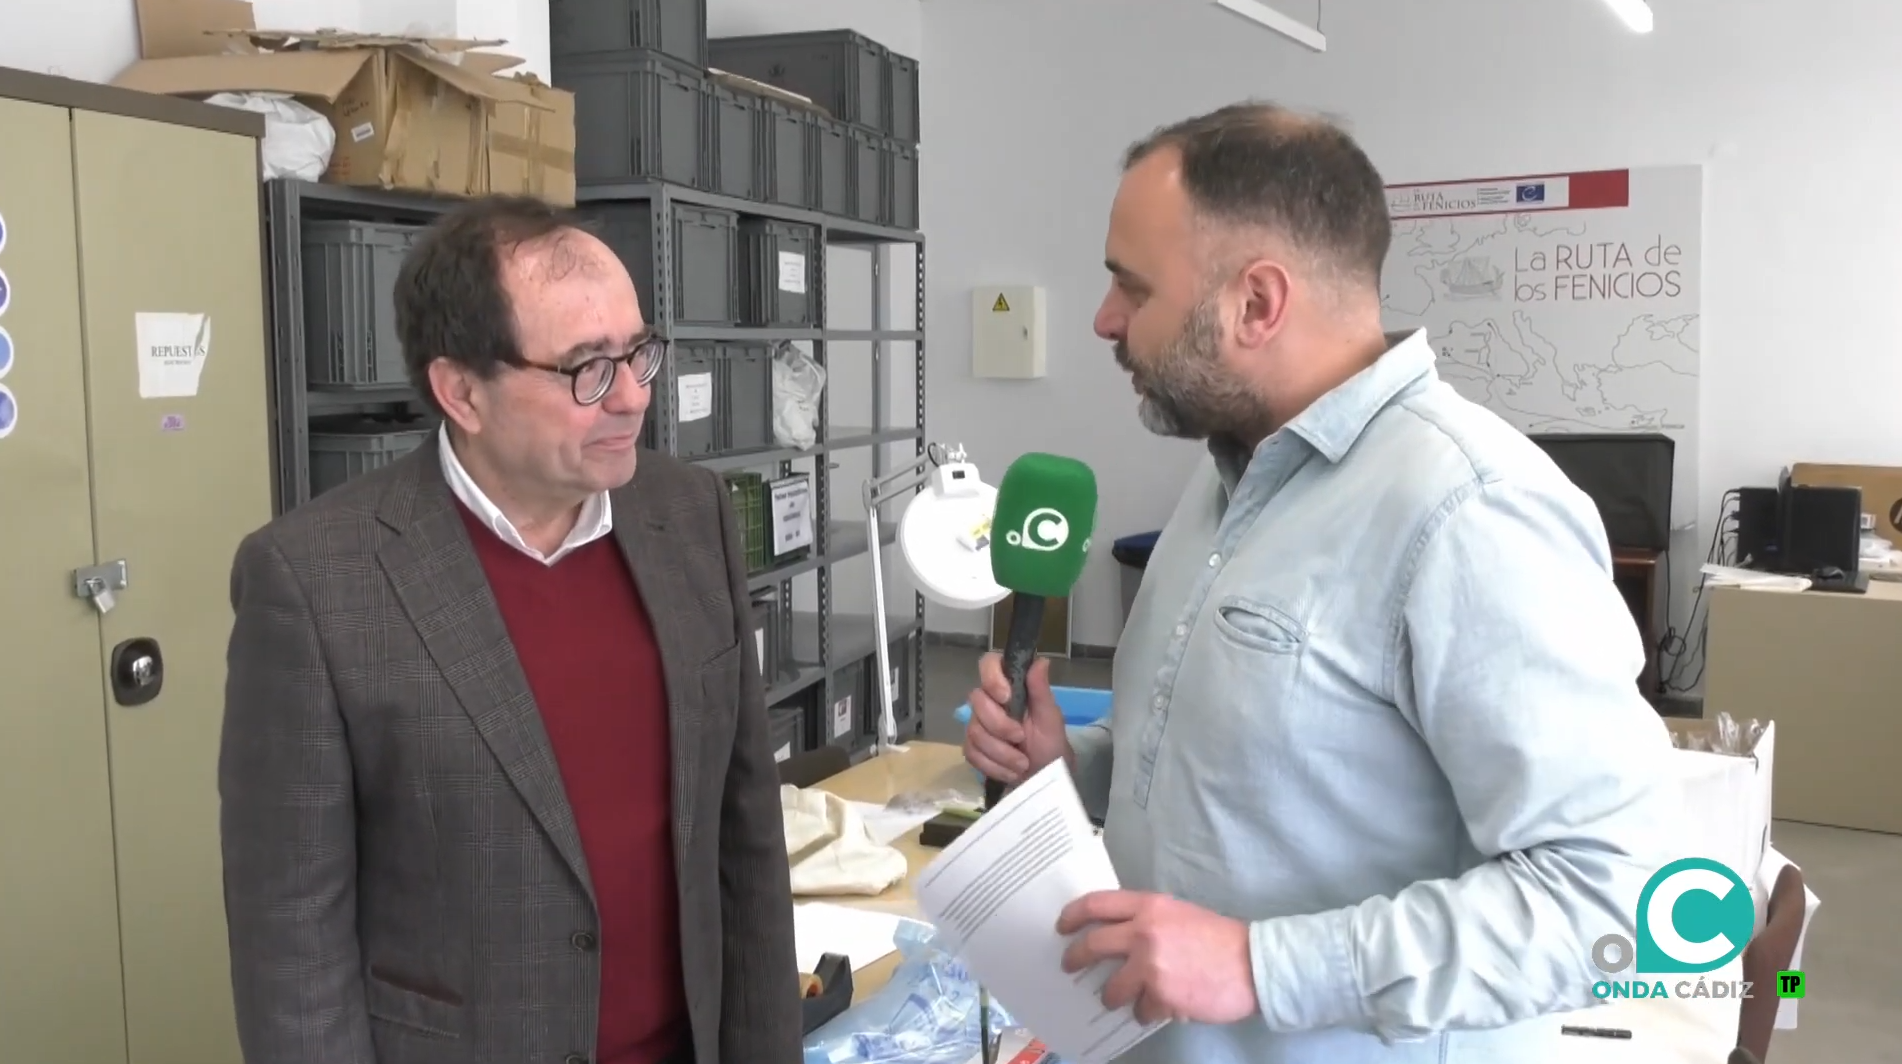 Entrevista José Ramos en el Programa Aula Magna de Onda Cádiz TV